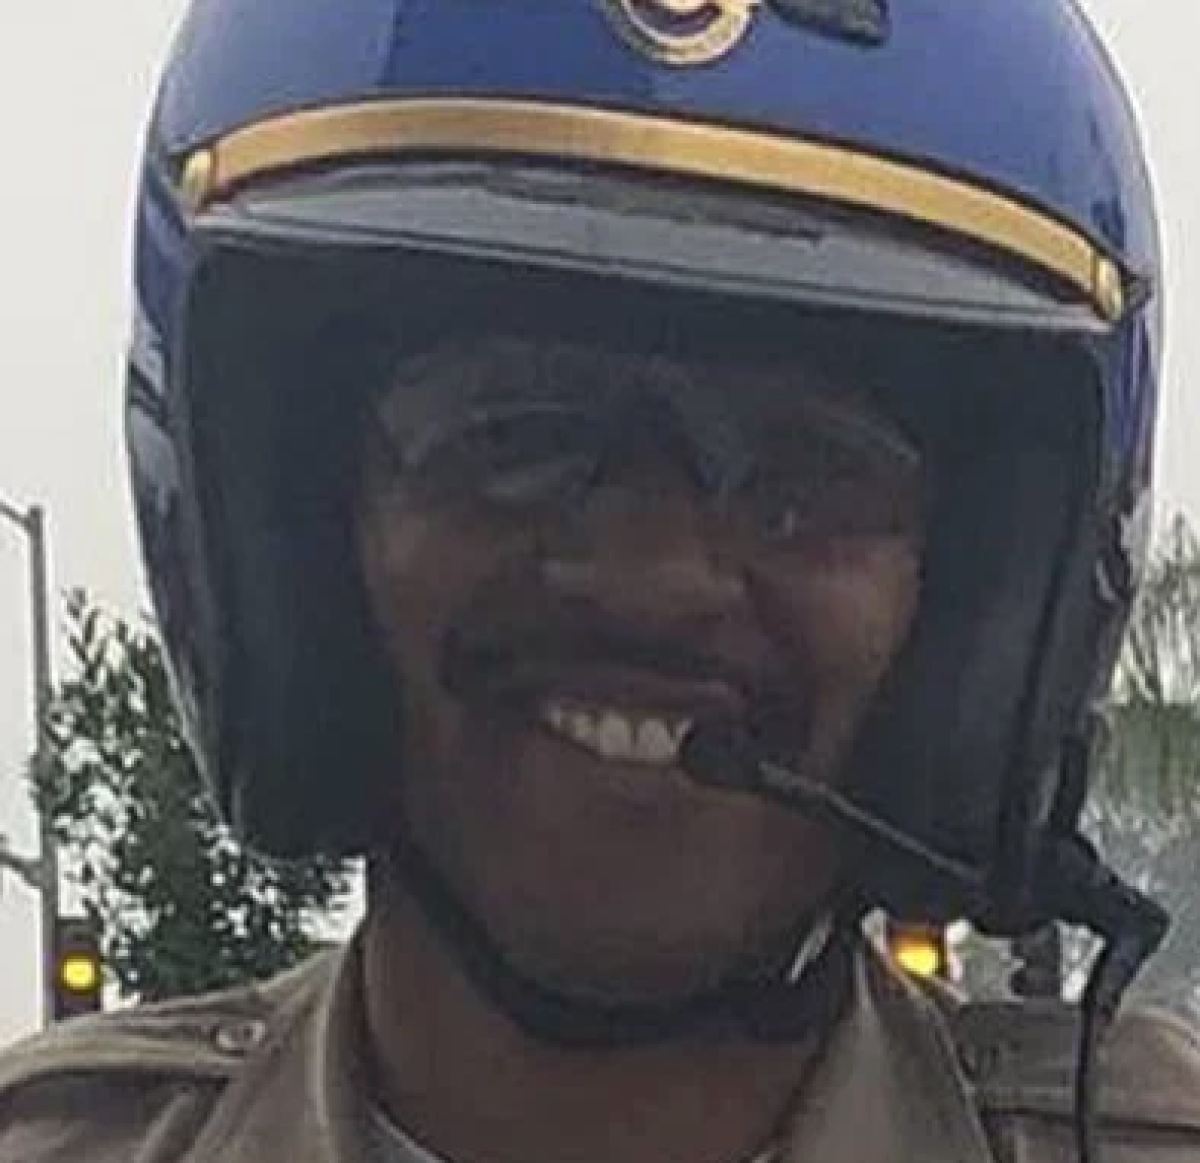 CHP Officer Andre Moye